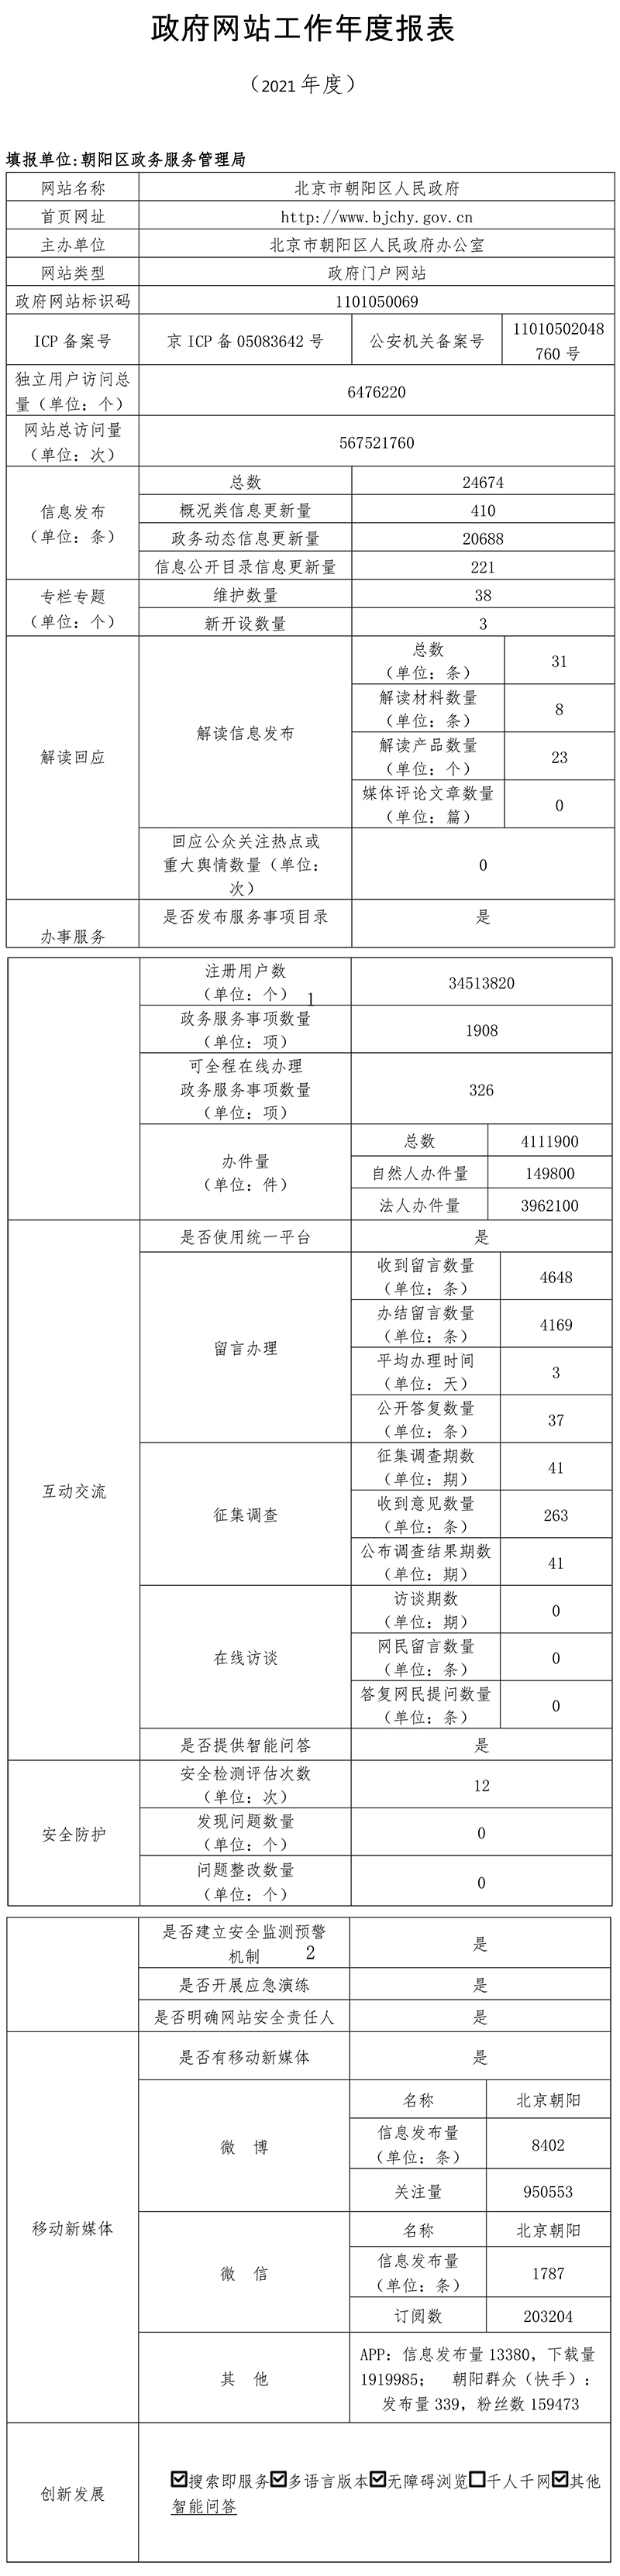 北京市朝陽區人民政府2021年政府網站年度工作報表